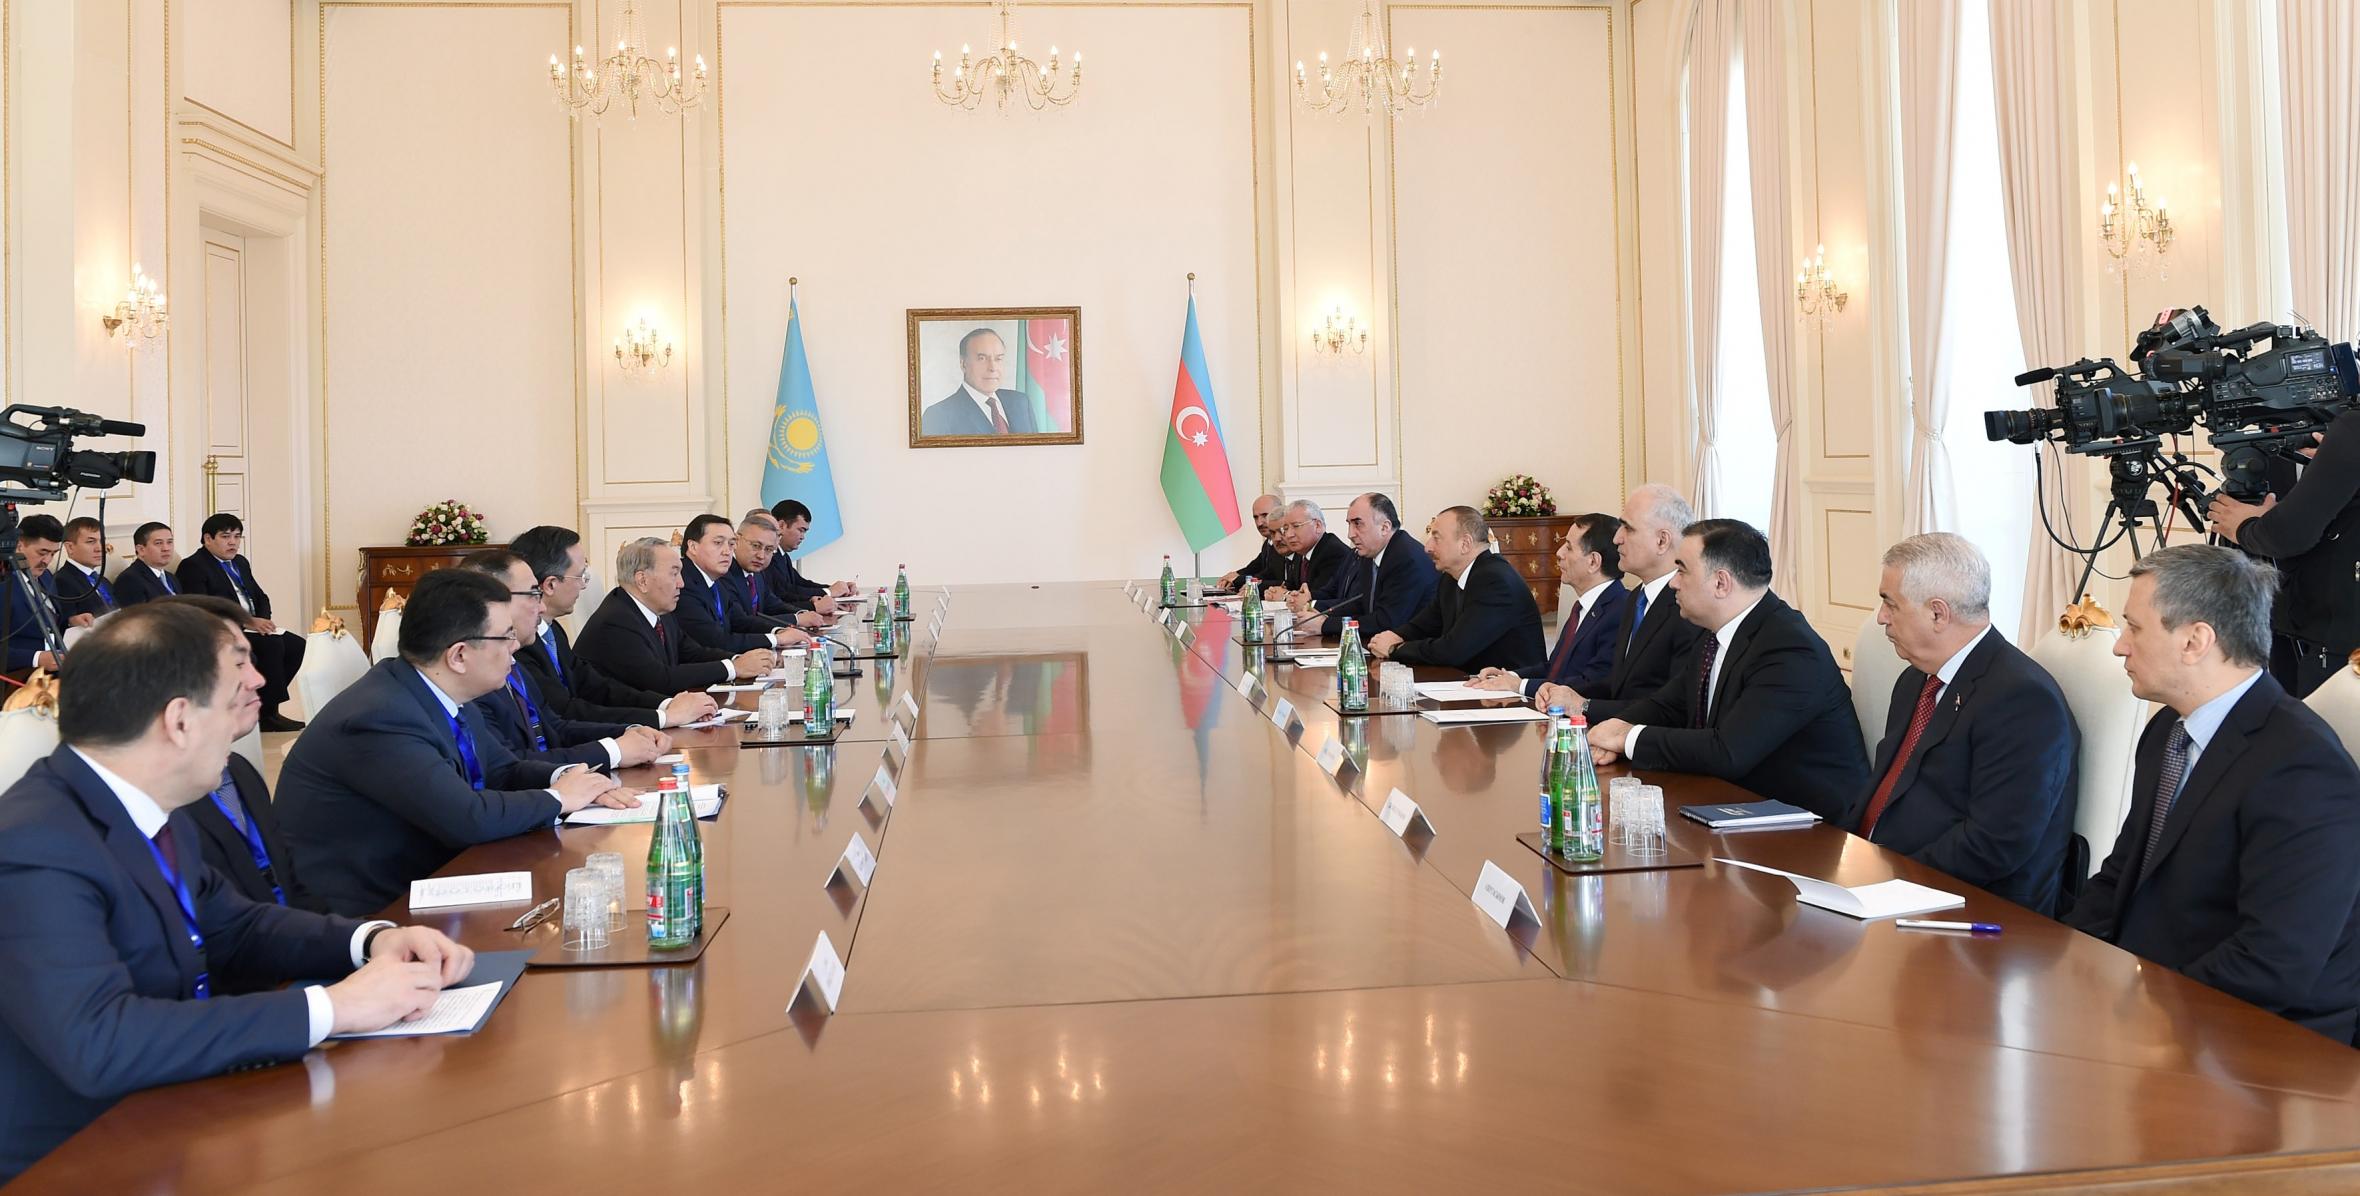 Состоялась встреча Ильхама Алиева и Президента Республики Казахстан Нурсултана Назарбаева в расширенном составе